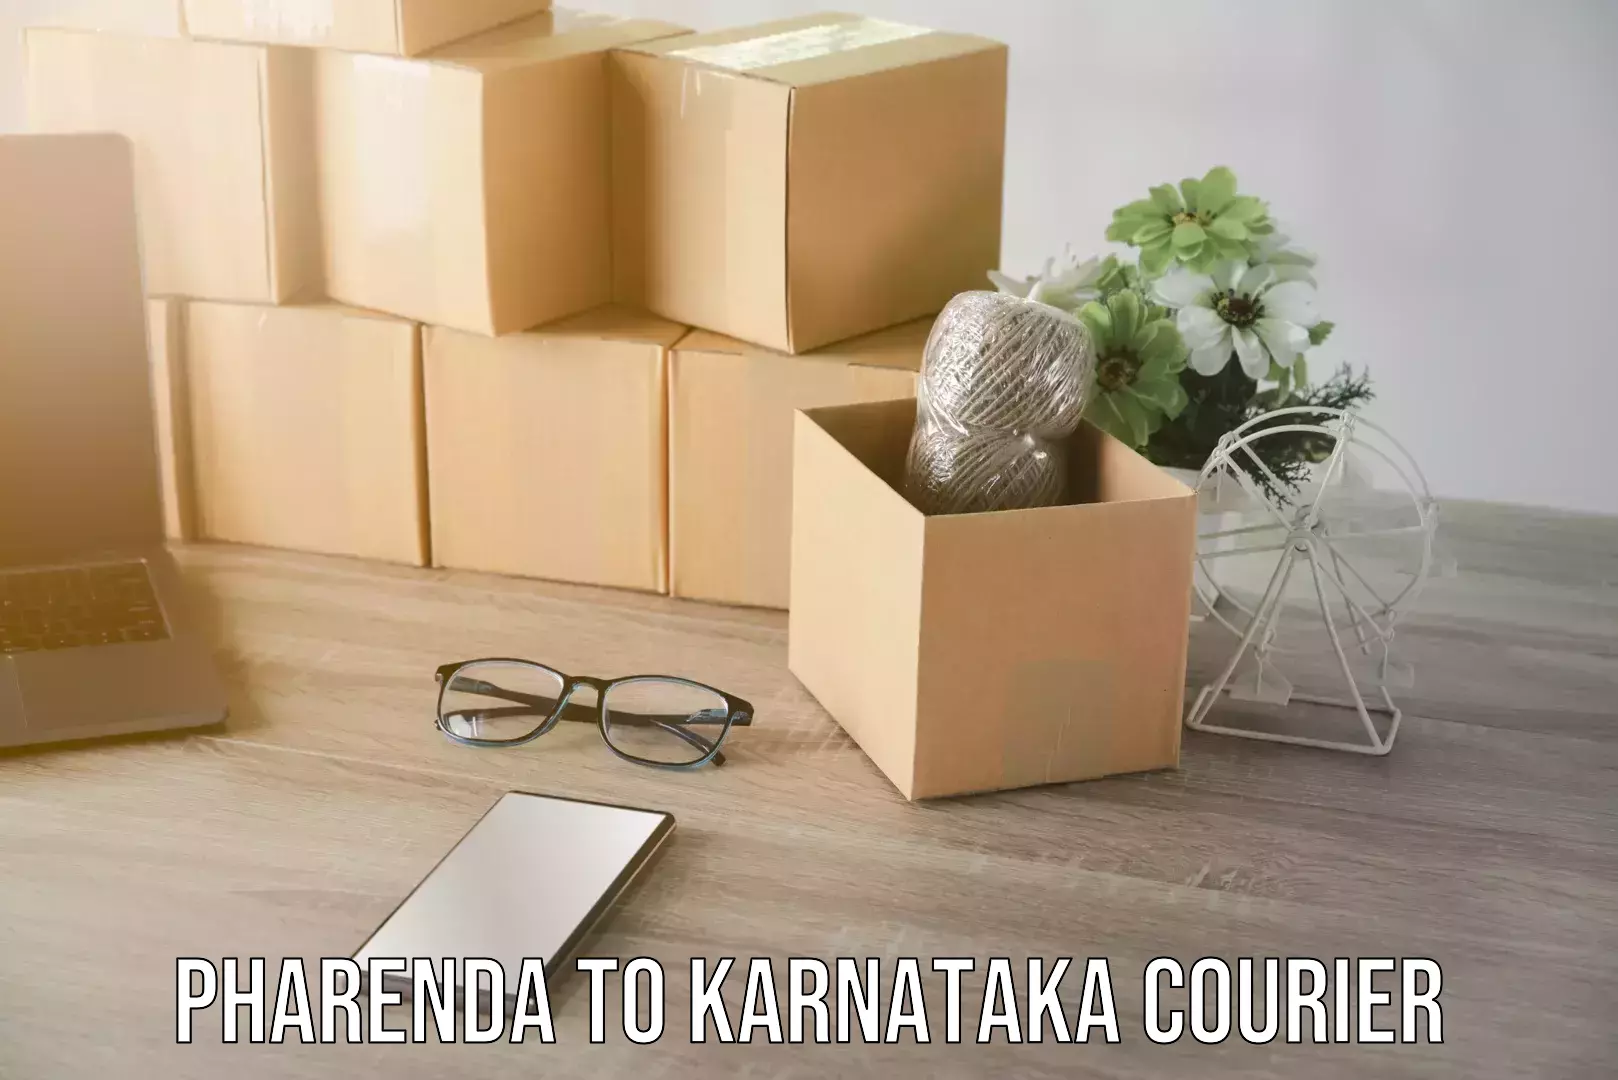 Tailored relocation services Pharenda to Karnataka